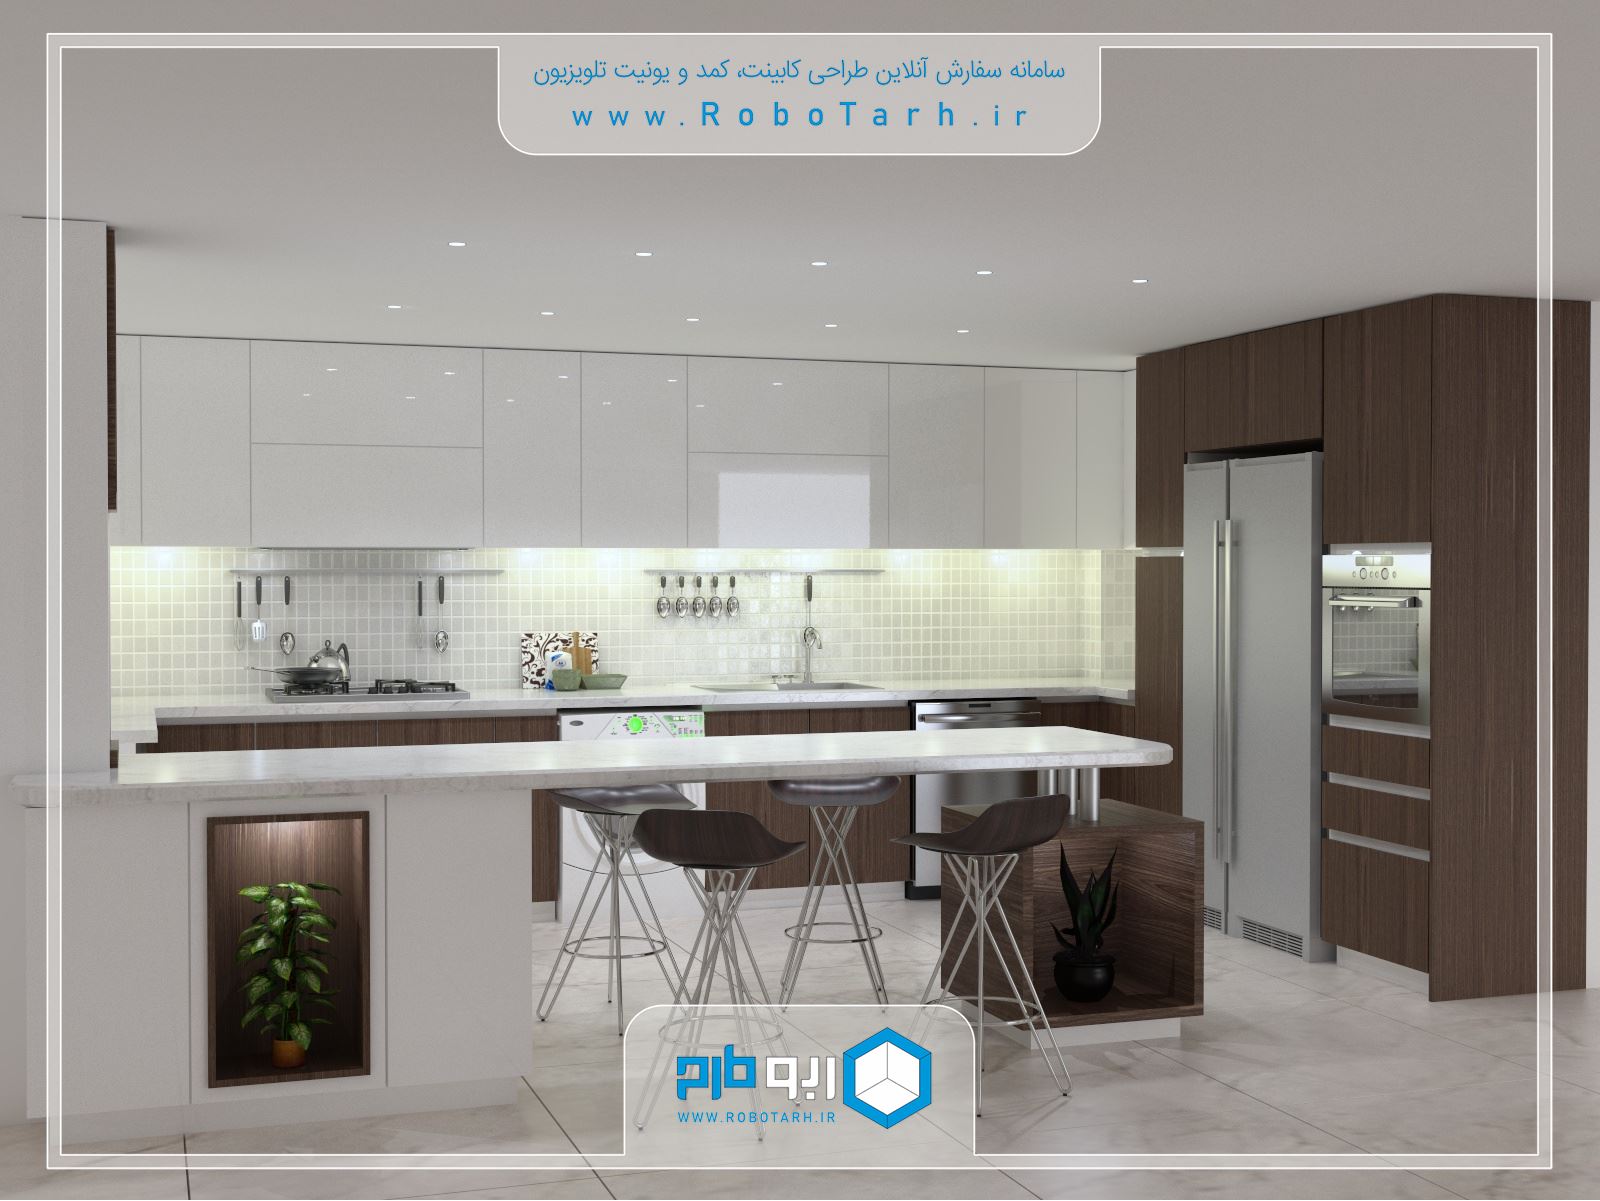 طراحی کابینت آشپزخانه مدرن قهوه ای و سفید رنگ با چیدمان یو شکل و استفاده از شبه جزیره - ربوطرح